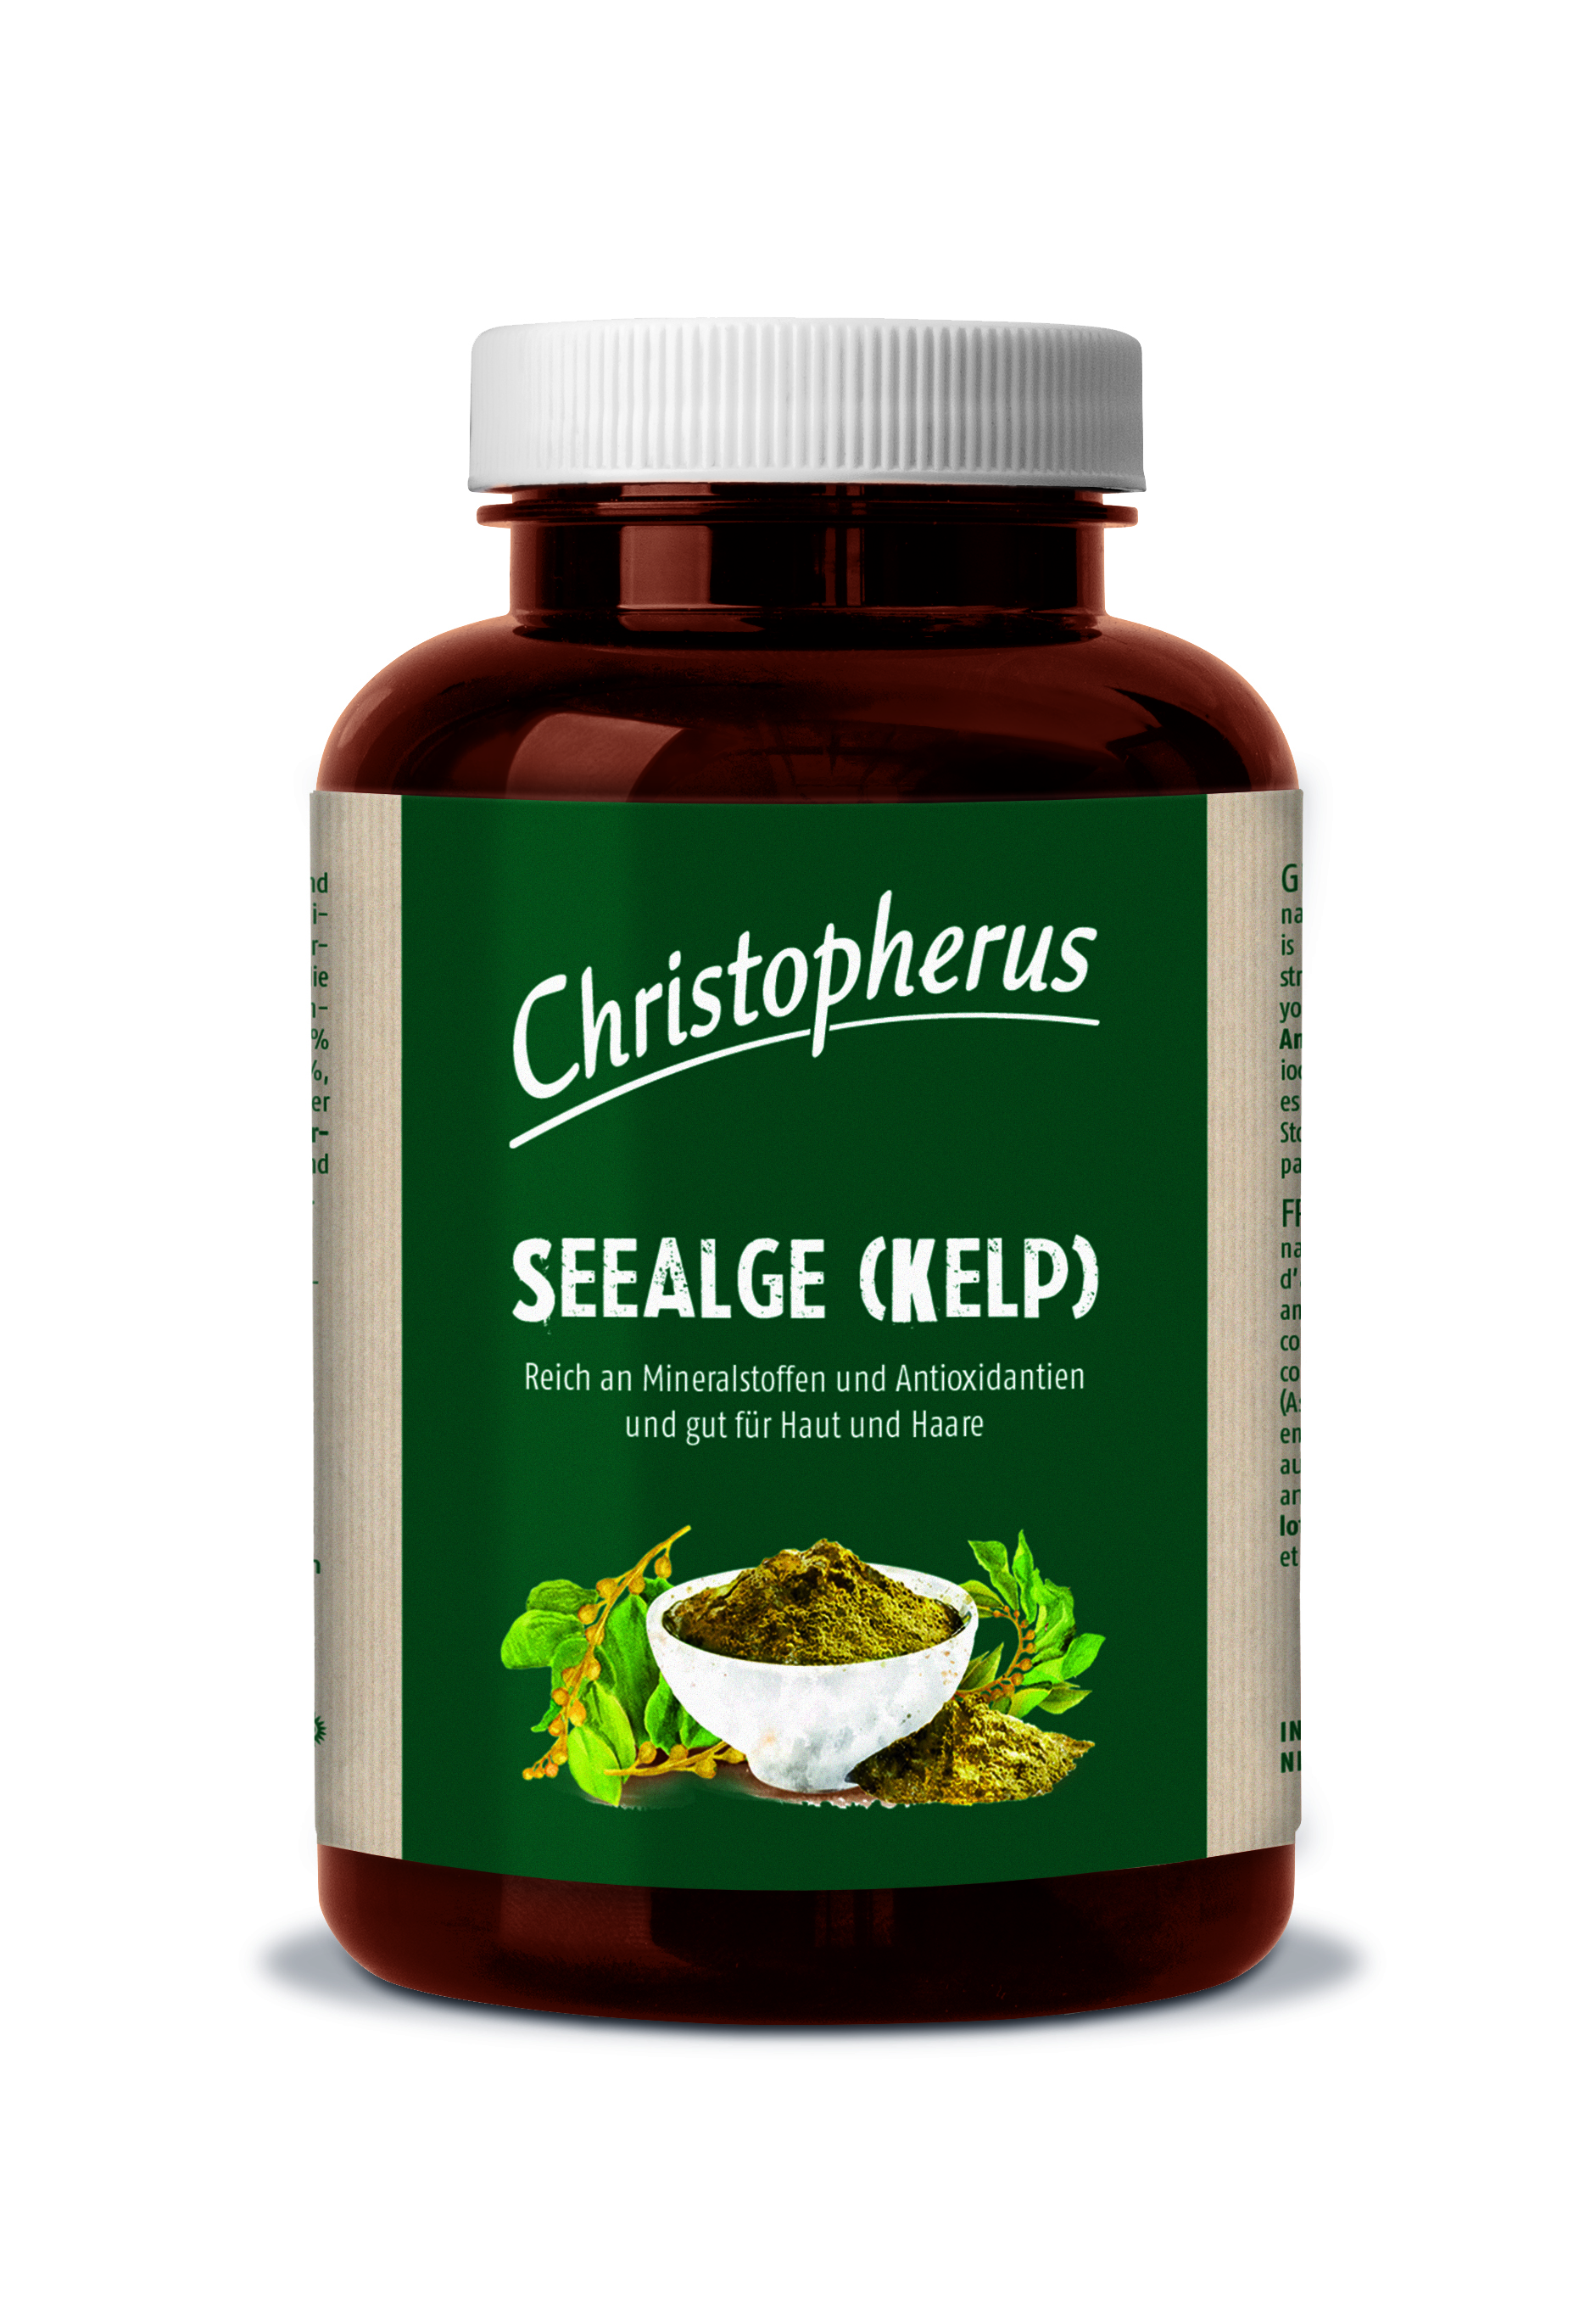 Christopherus – Seealge (Kelp)